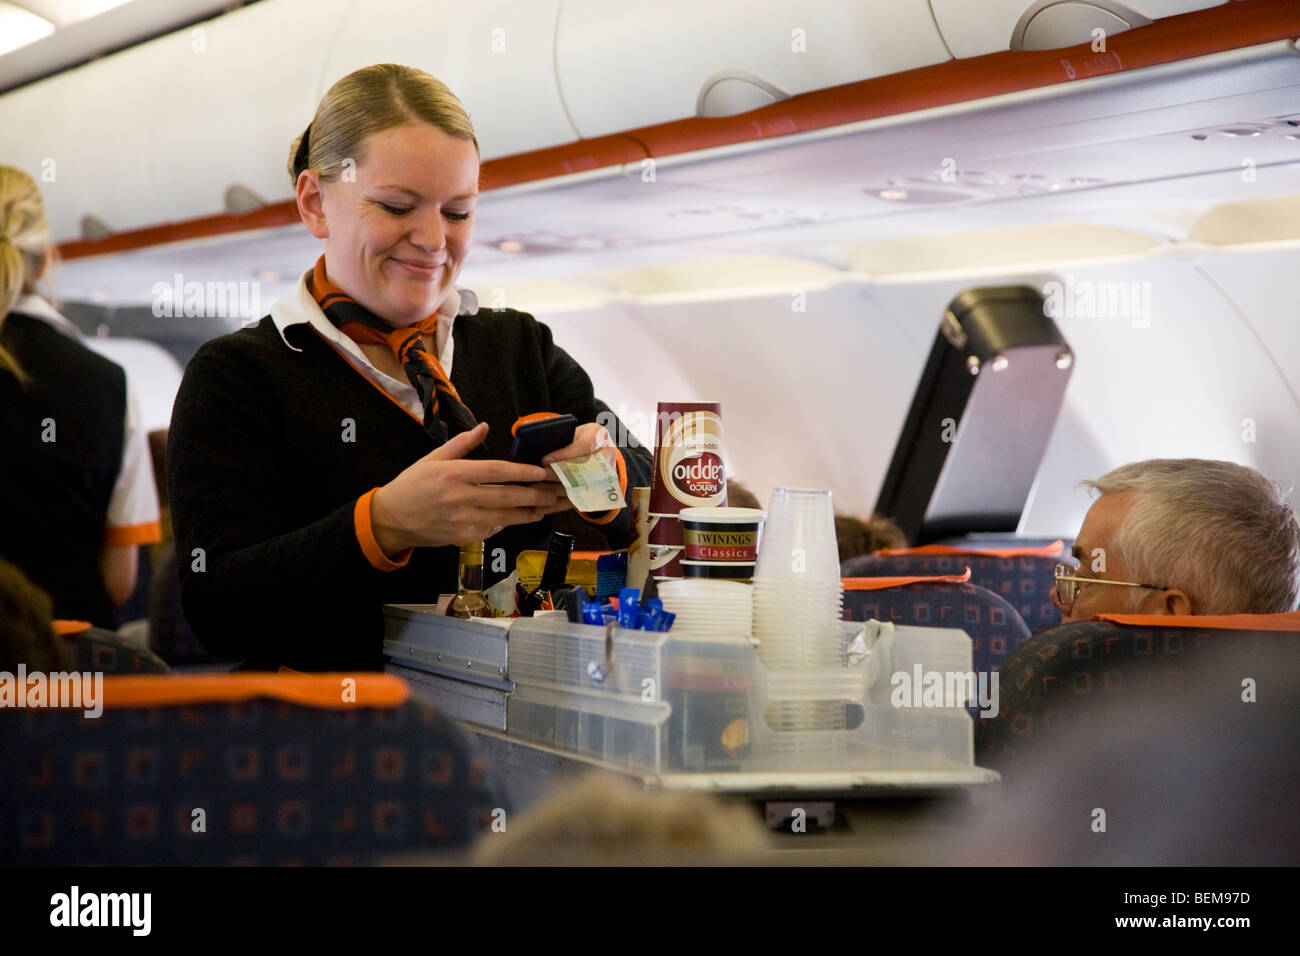 L'équipage de cabine / hôtesse de l'air sert des boissons et des collations à des passagers d'un trolley panier lors d'un vol Easyjet Banque D'Images